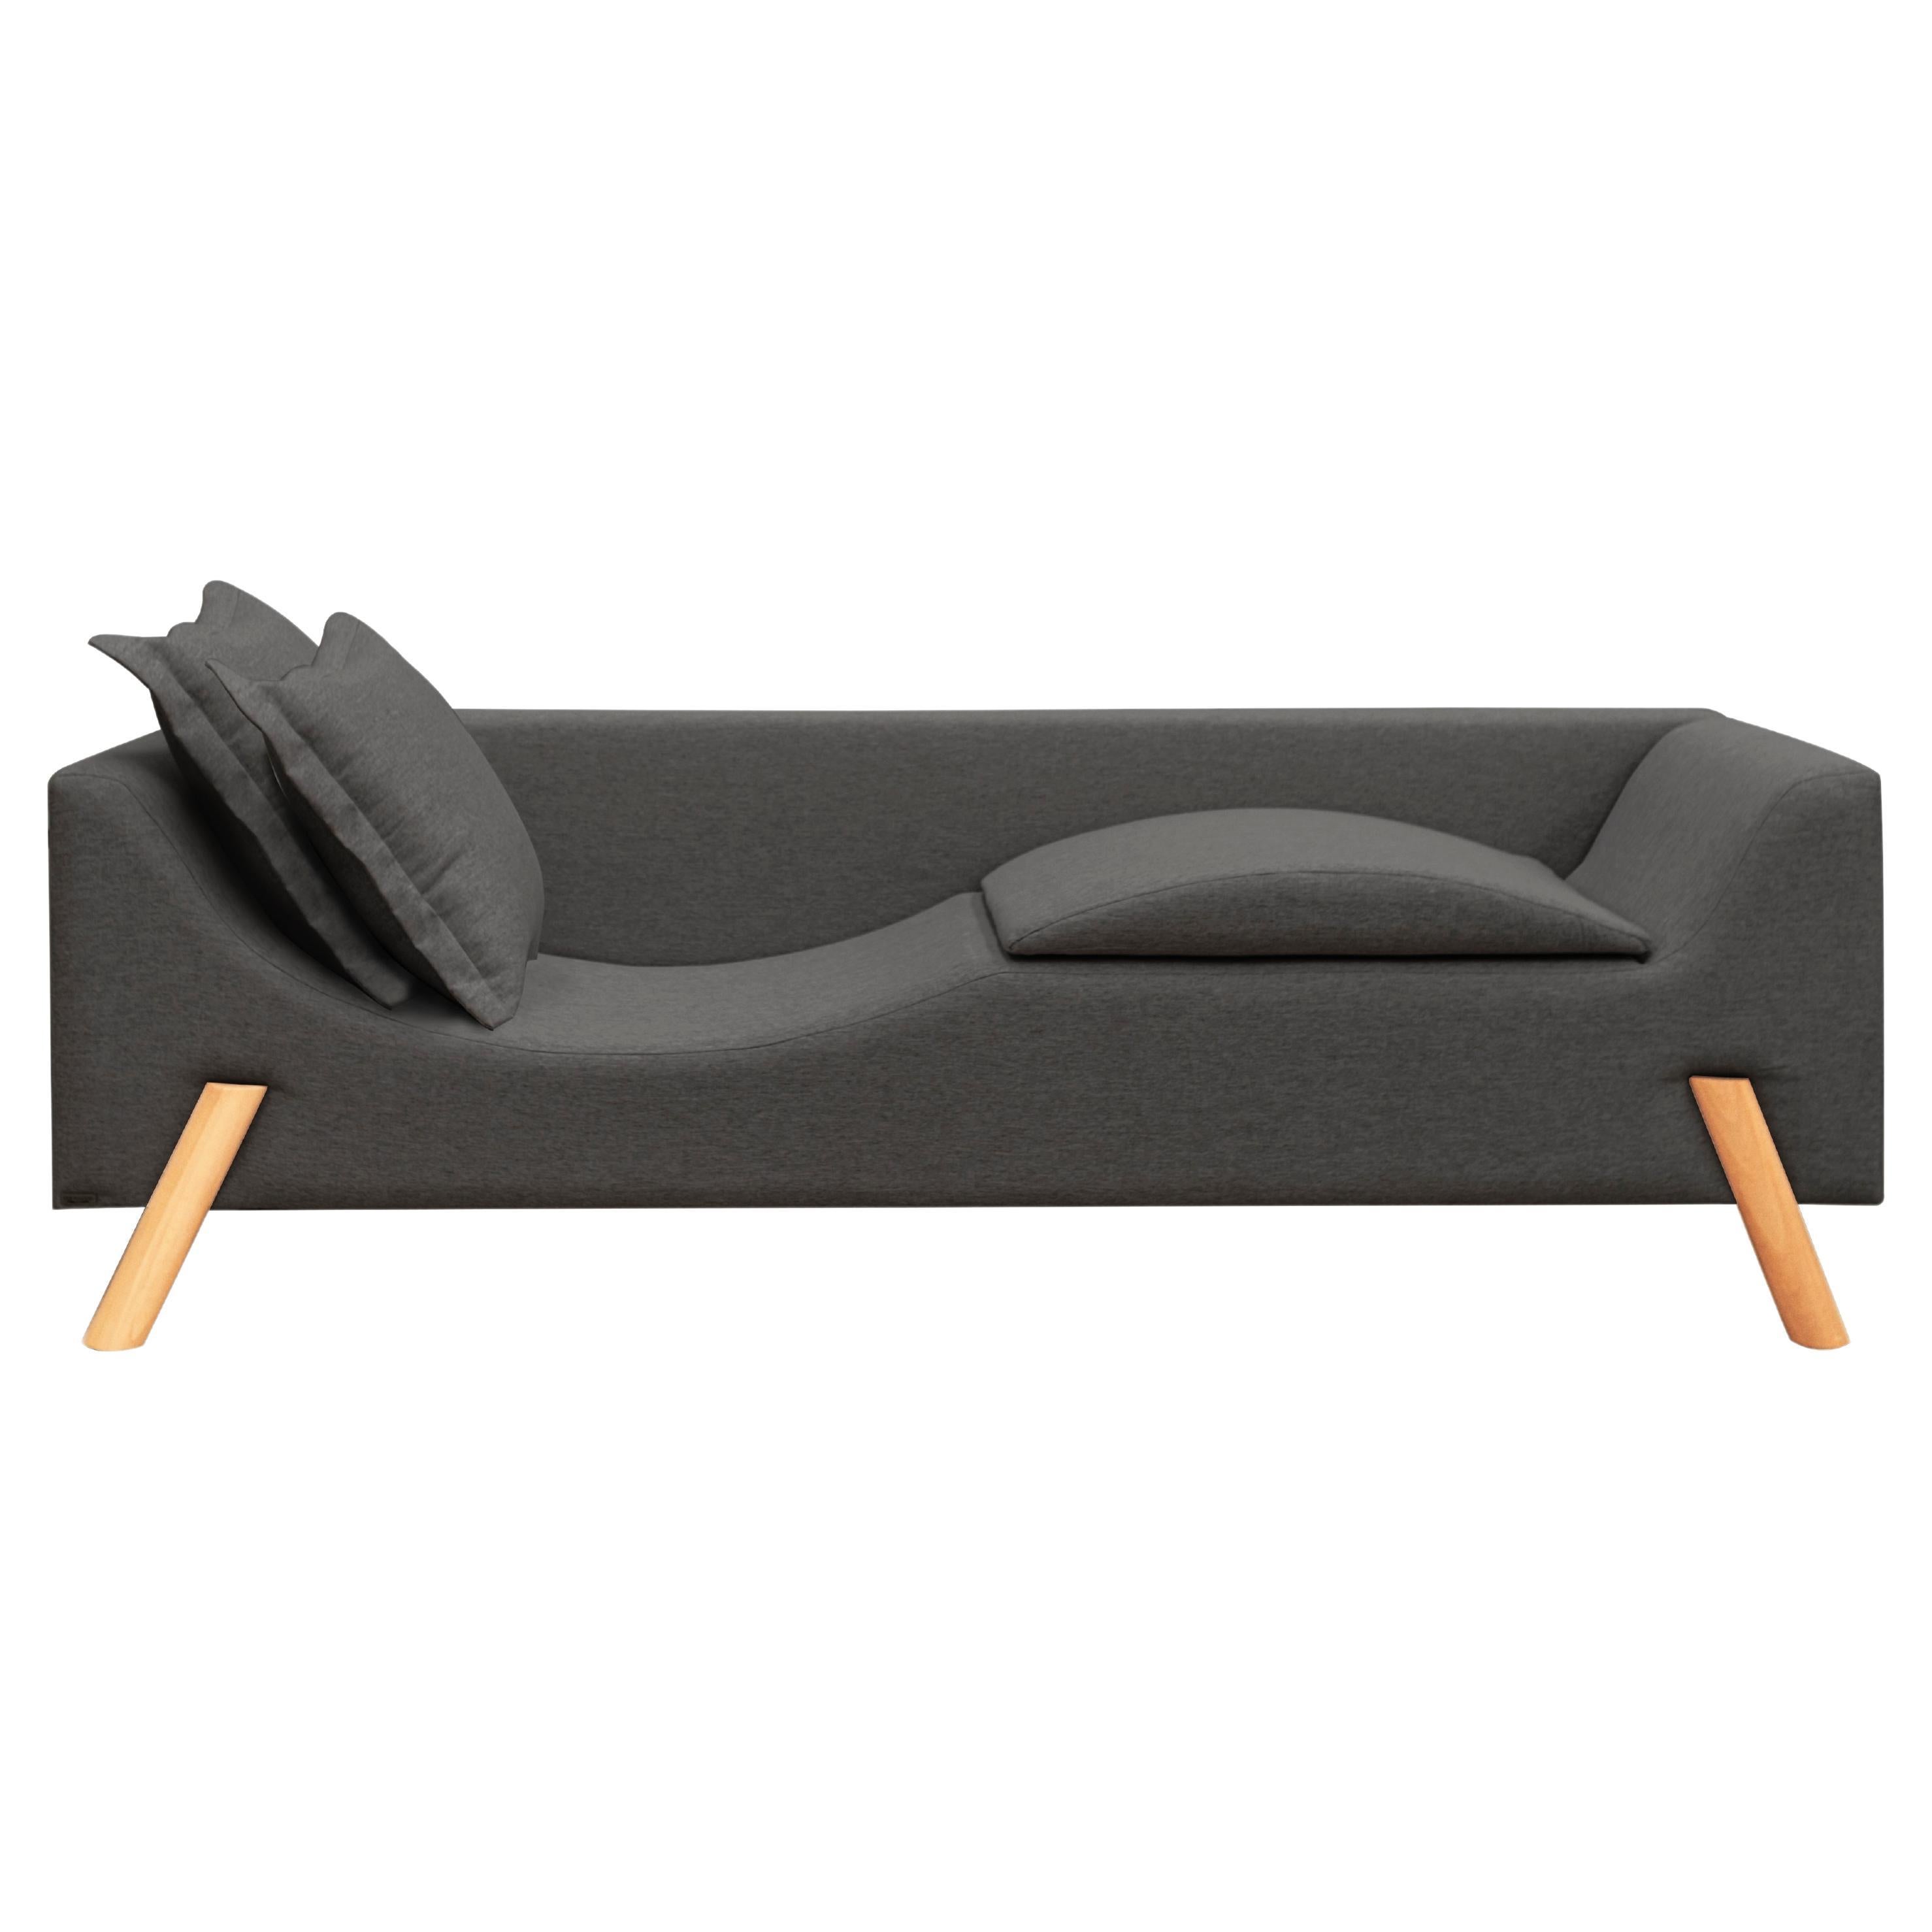 Couch und Chaise Longue „Flag“ aus Leinen und Holz mit zwei Armen